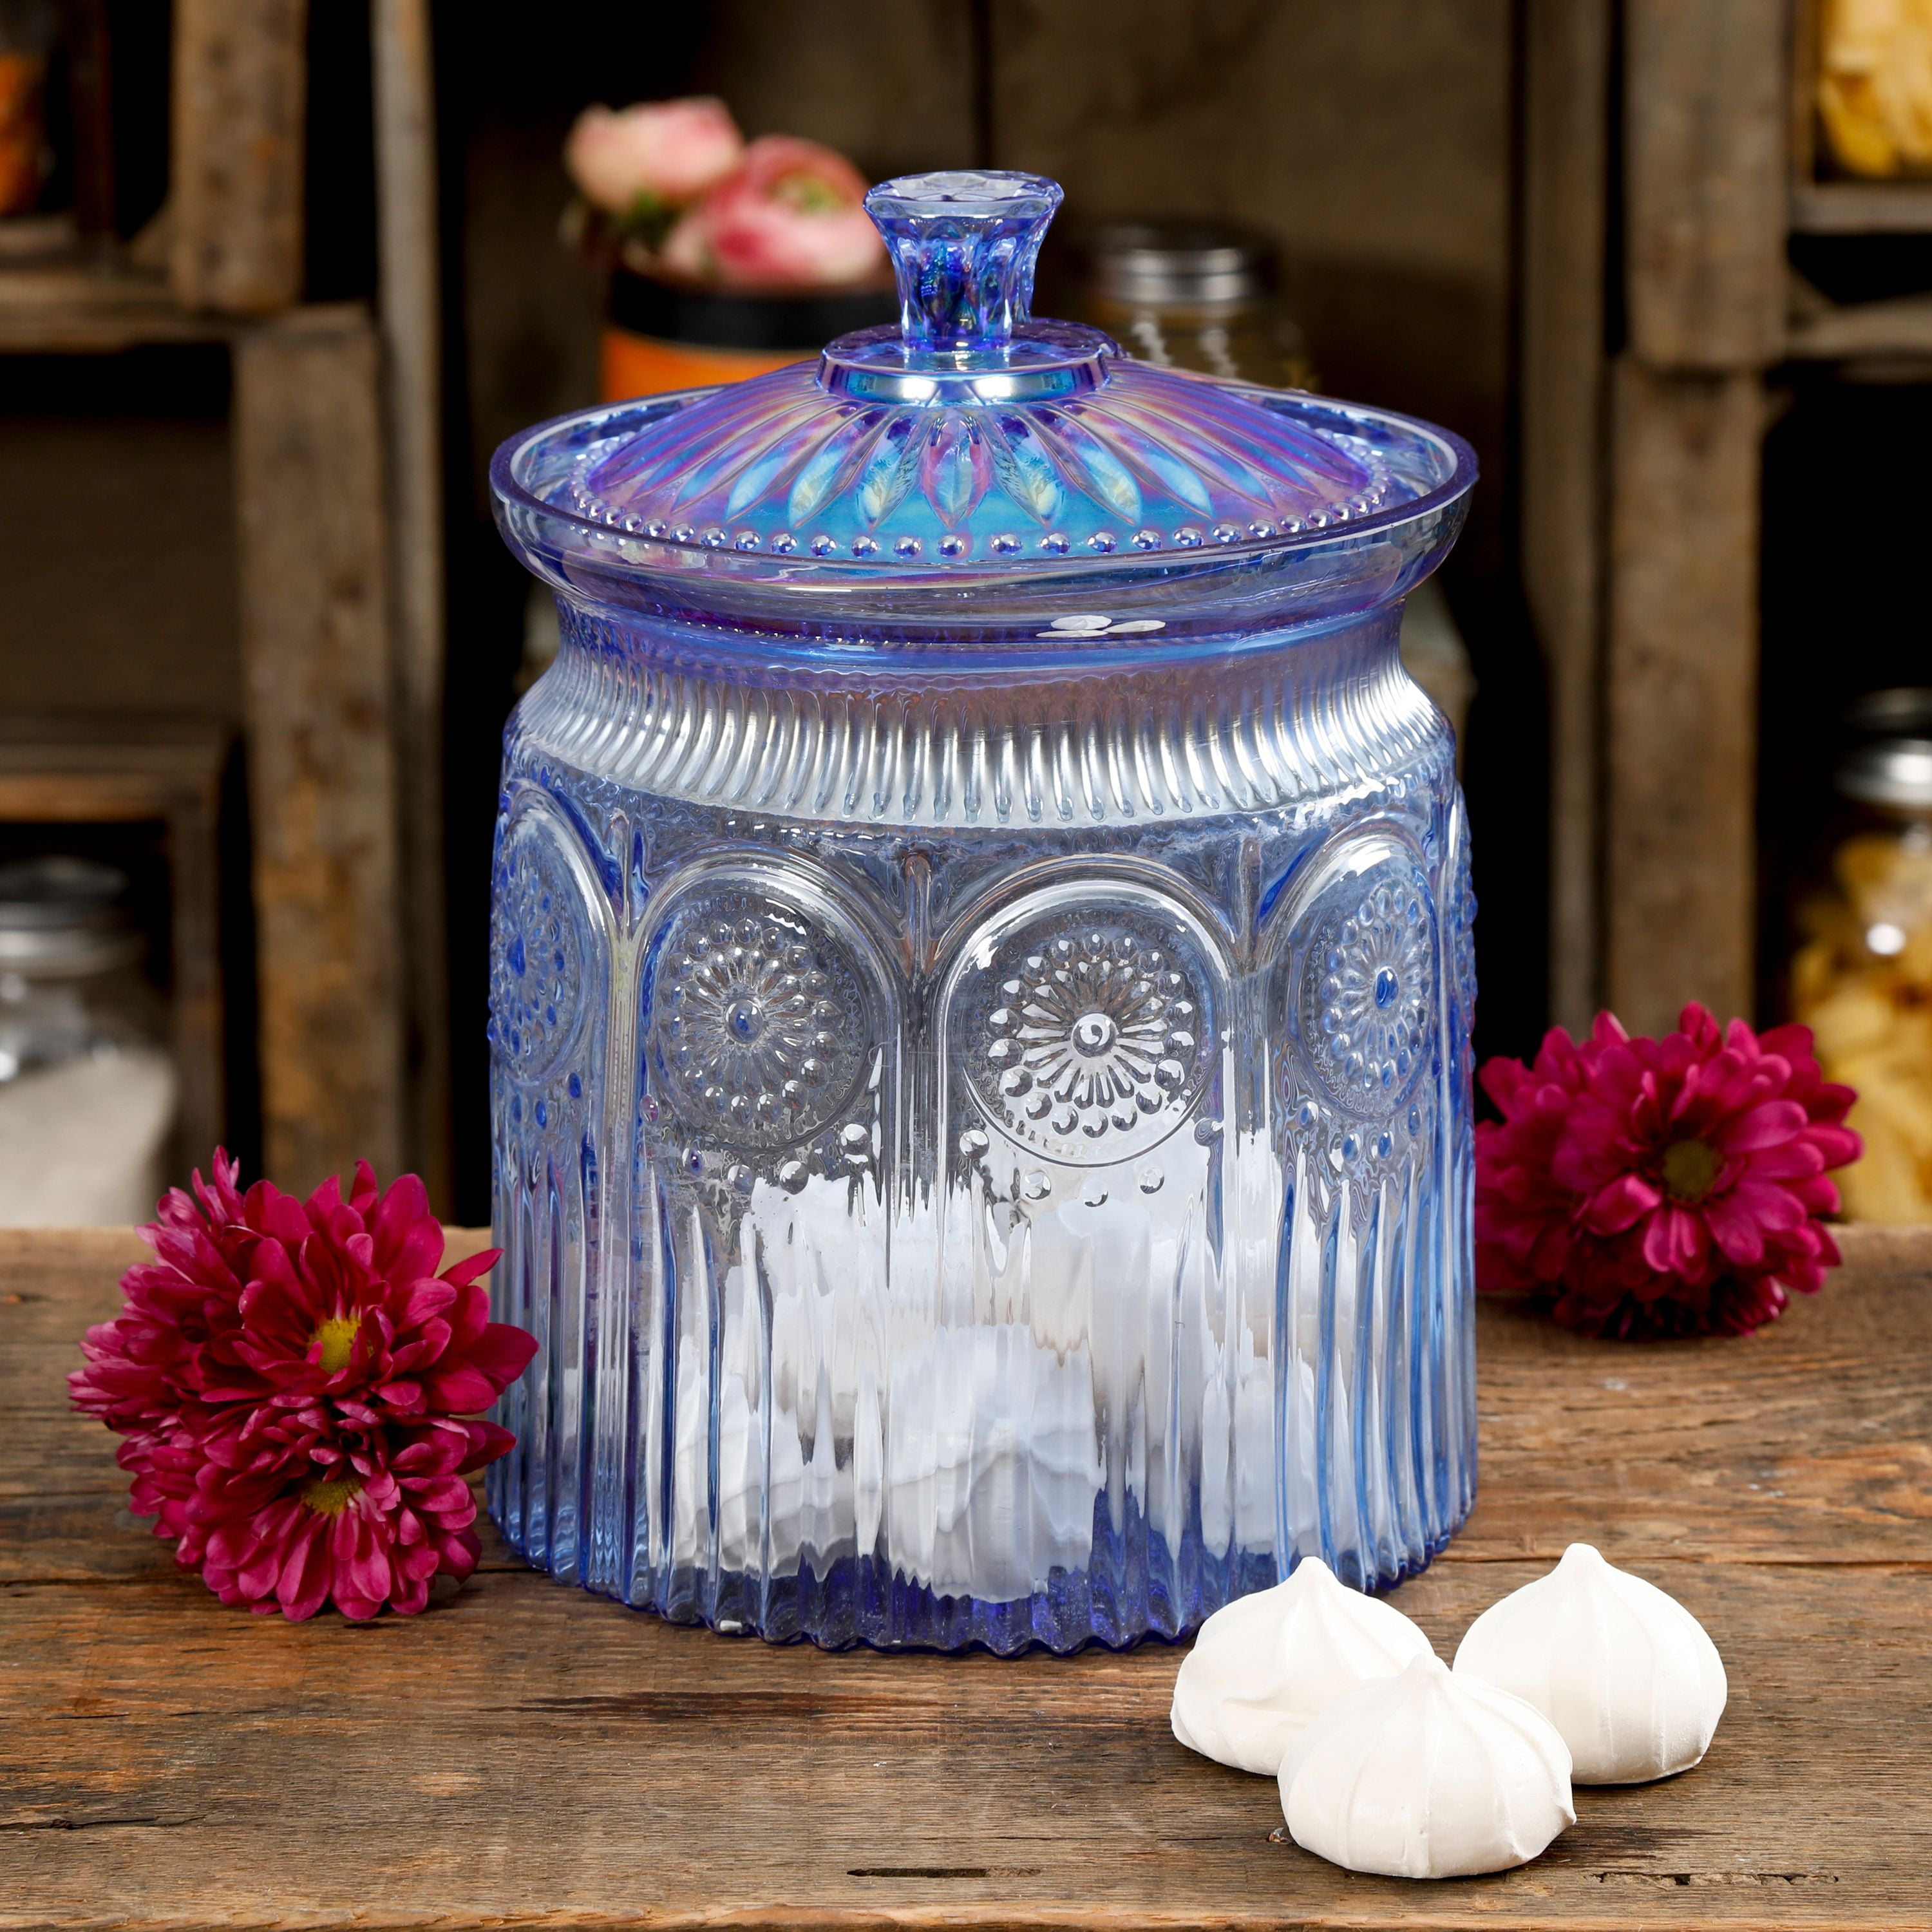 The Pioneer Woman Cookie Jar at Walmart - Where to Buy Ree Drummond's  Cookie Jar